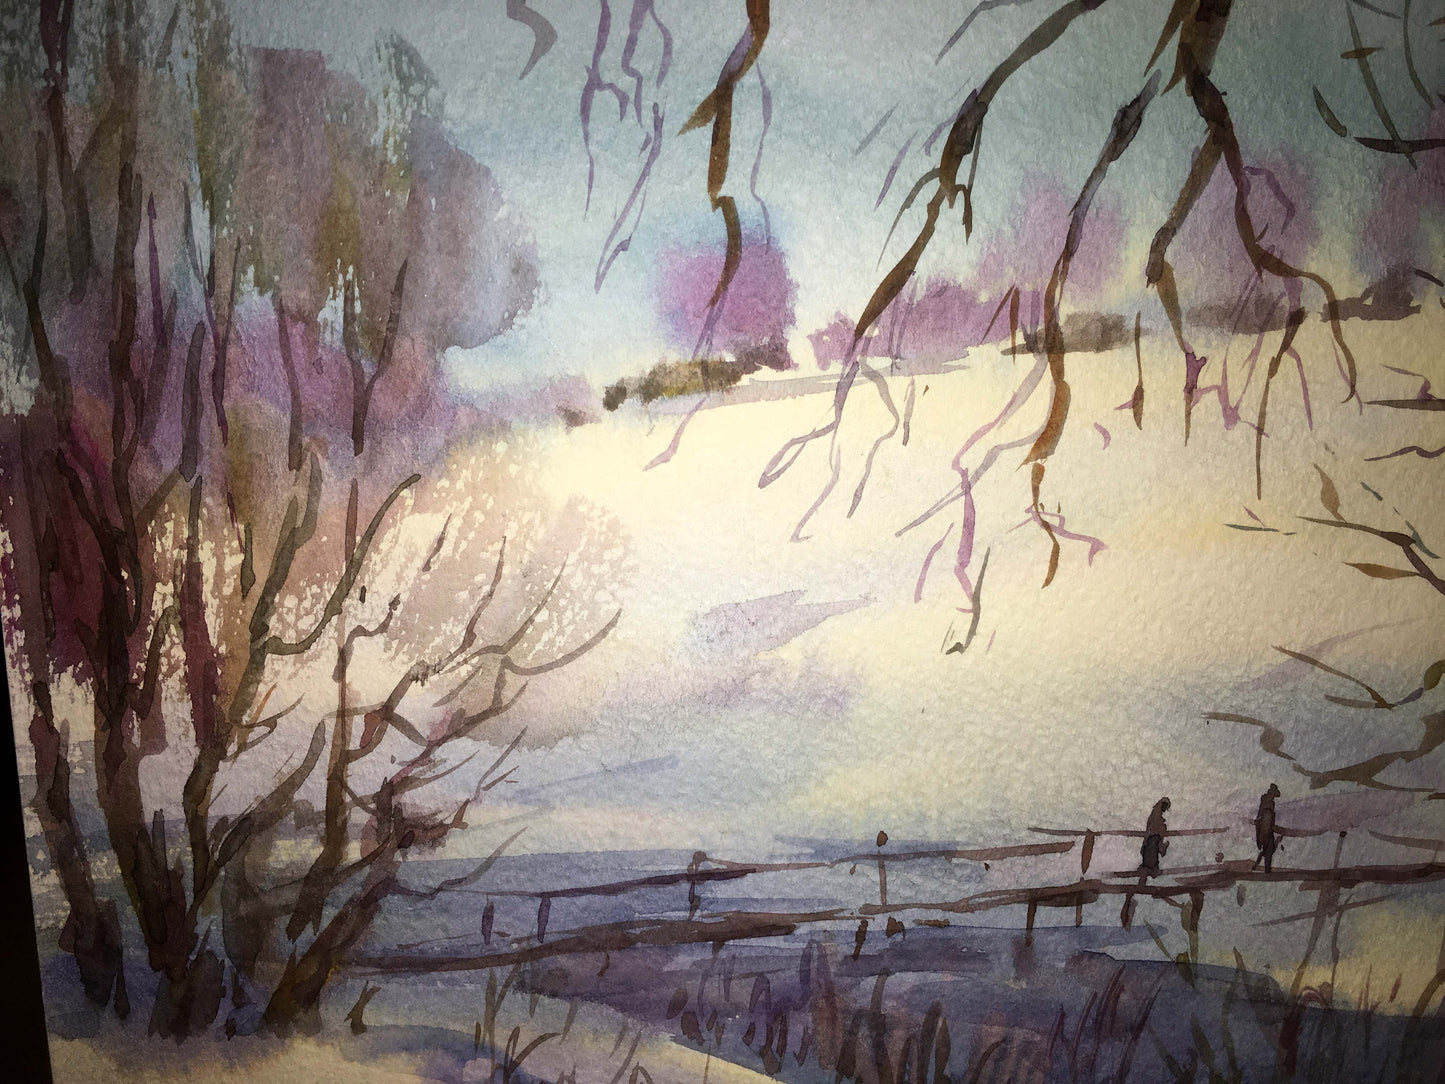 Winter landscape watercolor painting Viktor Mikhailichenko